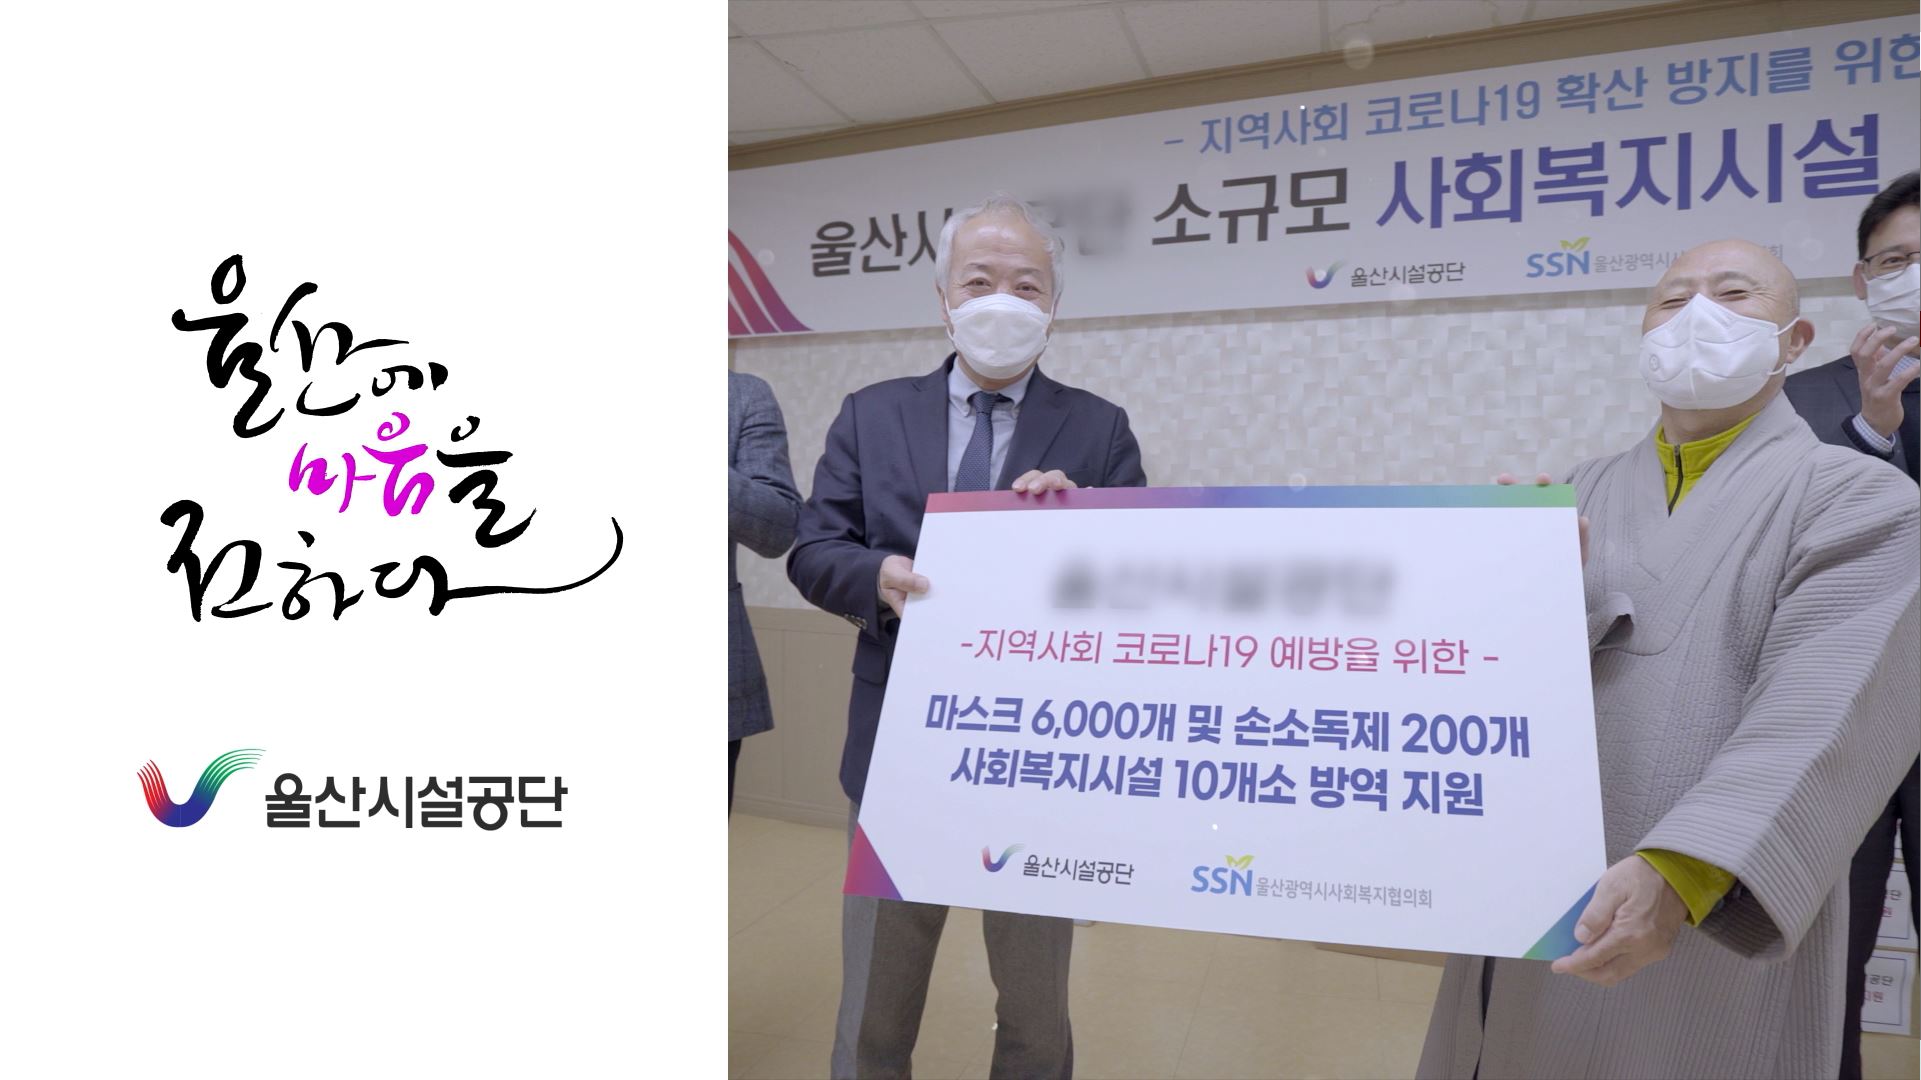 2021 울산시설공단 사회공헌 캠페인 영상